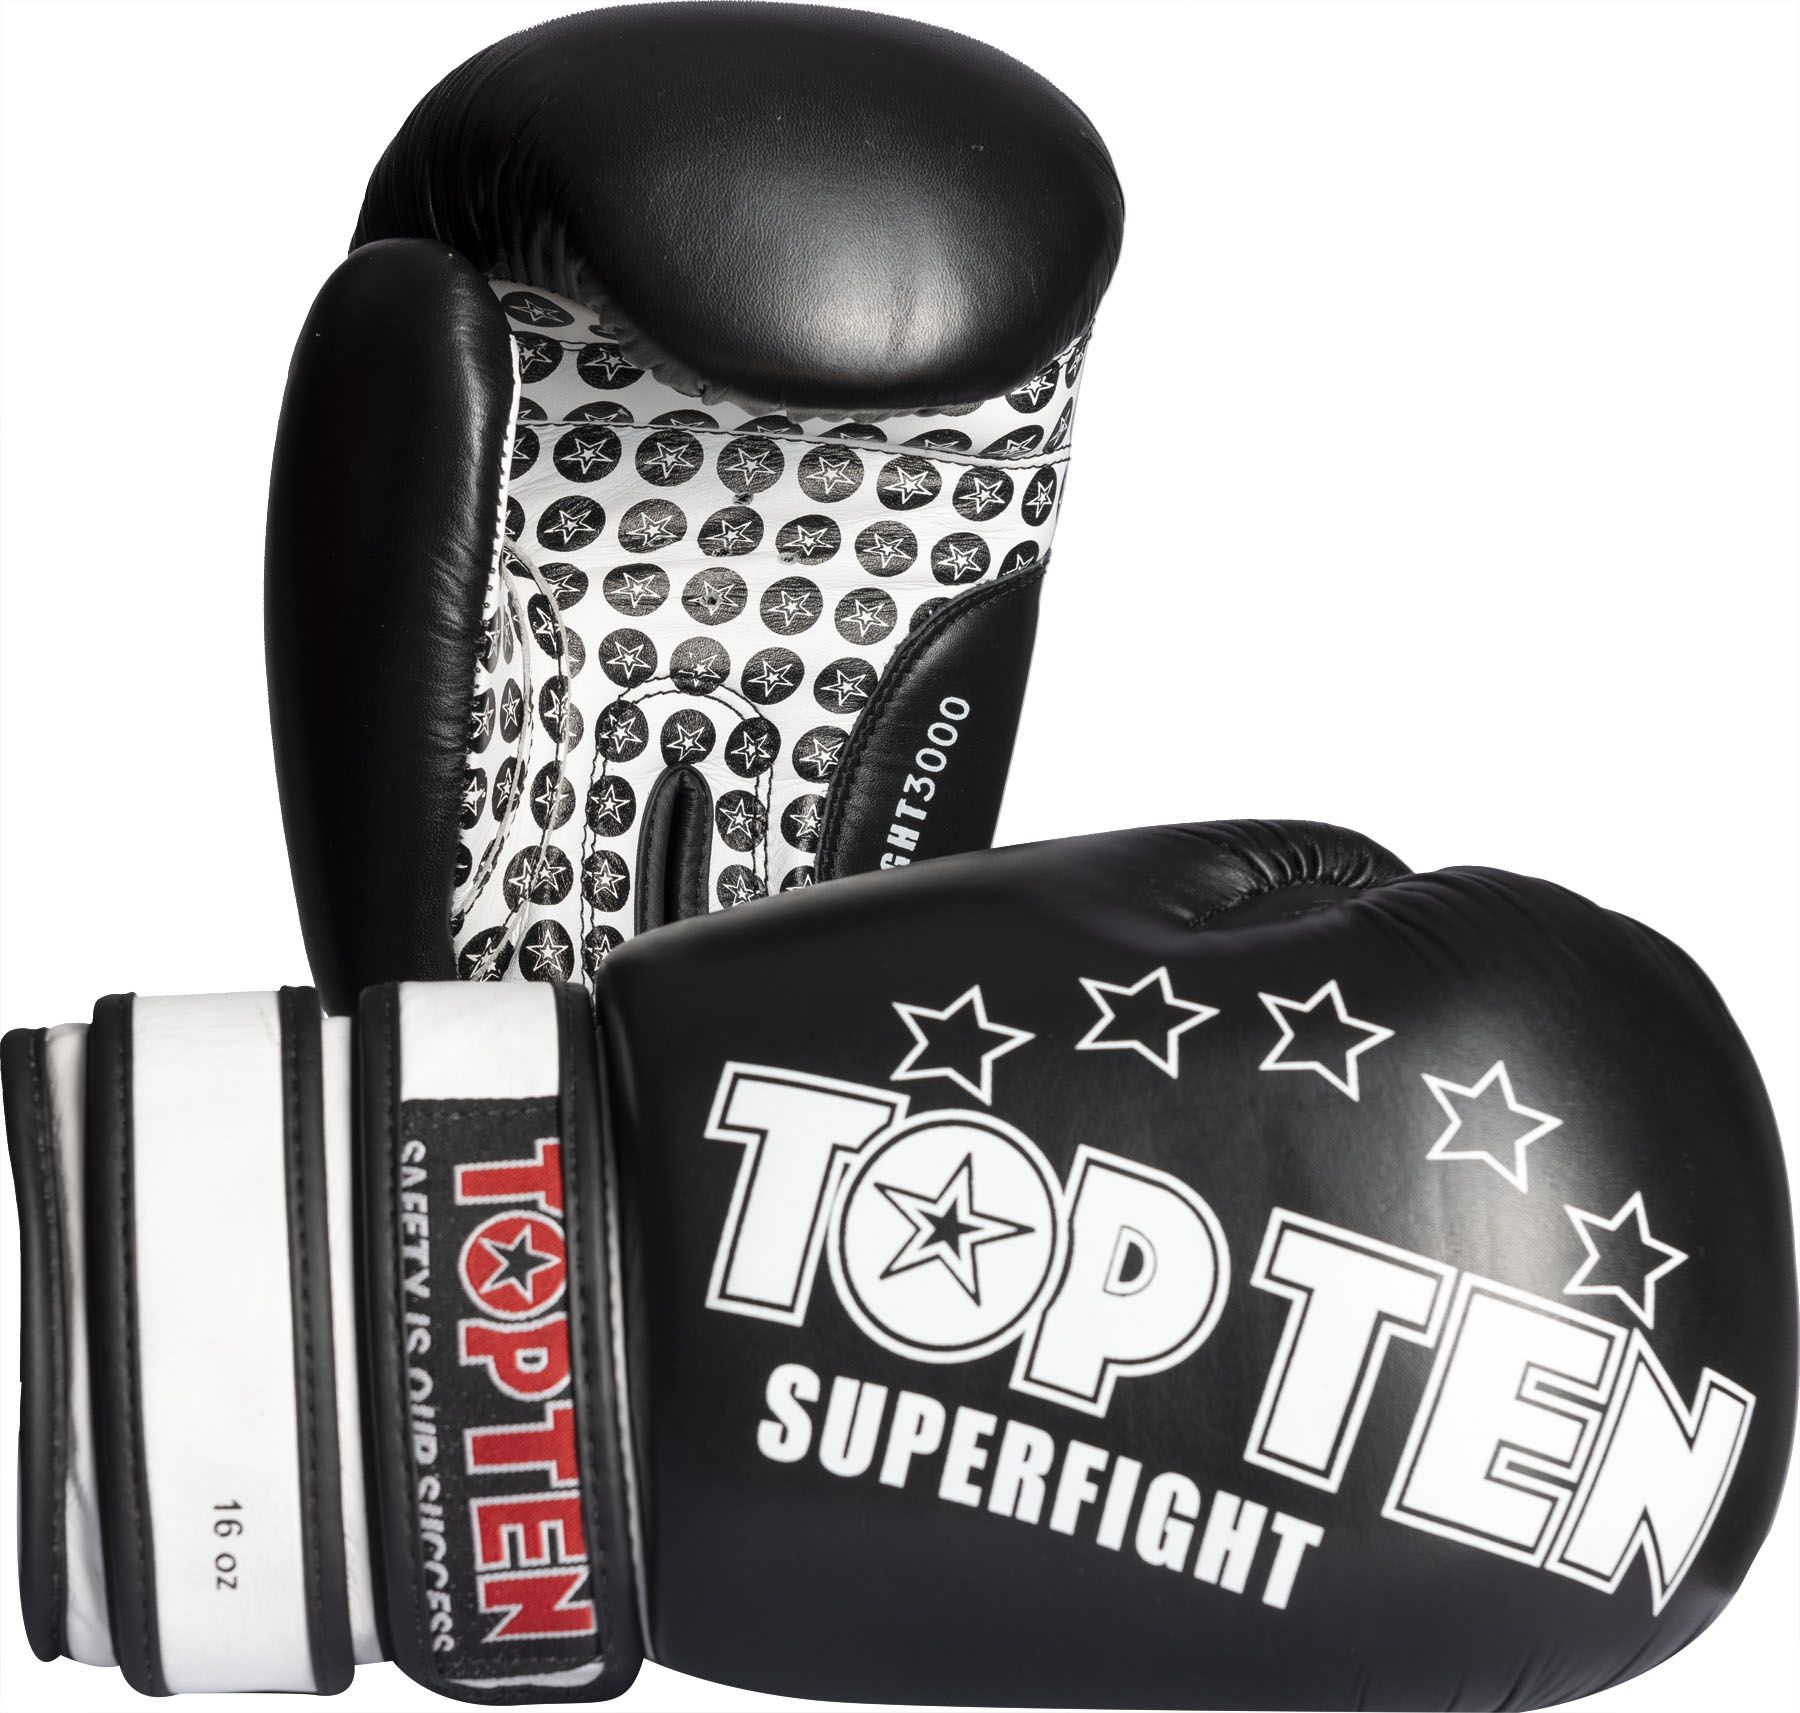 | KAMPFHELDEN 3000 Superfight Ten Top Boxhandschuhe